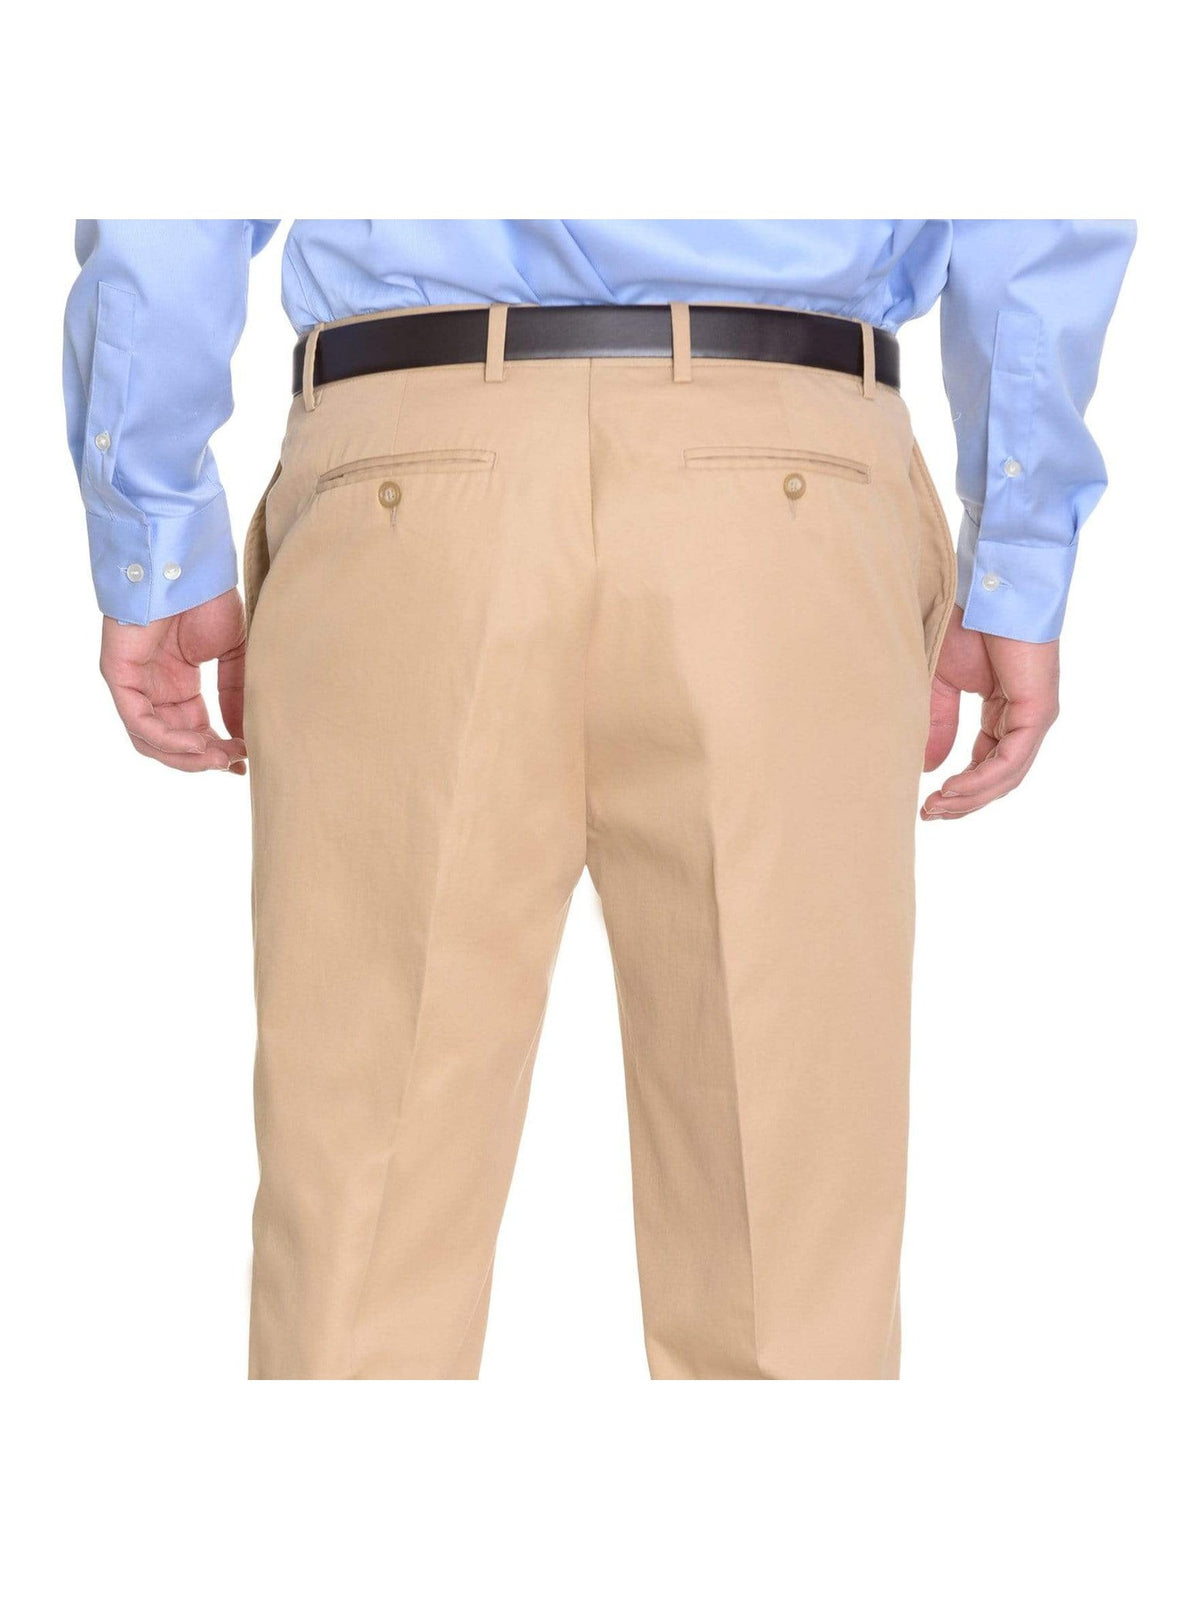 Crespi PANTS Crespi Classic Fit Solid Tan Beige Flat Front Cotton Casual Khaki Pants